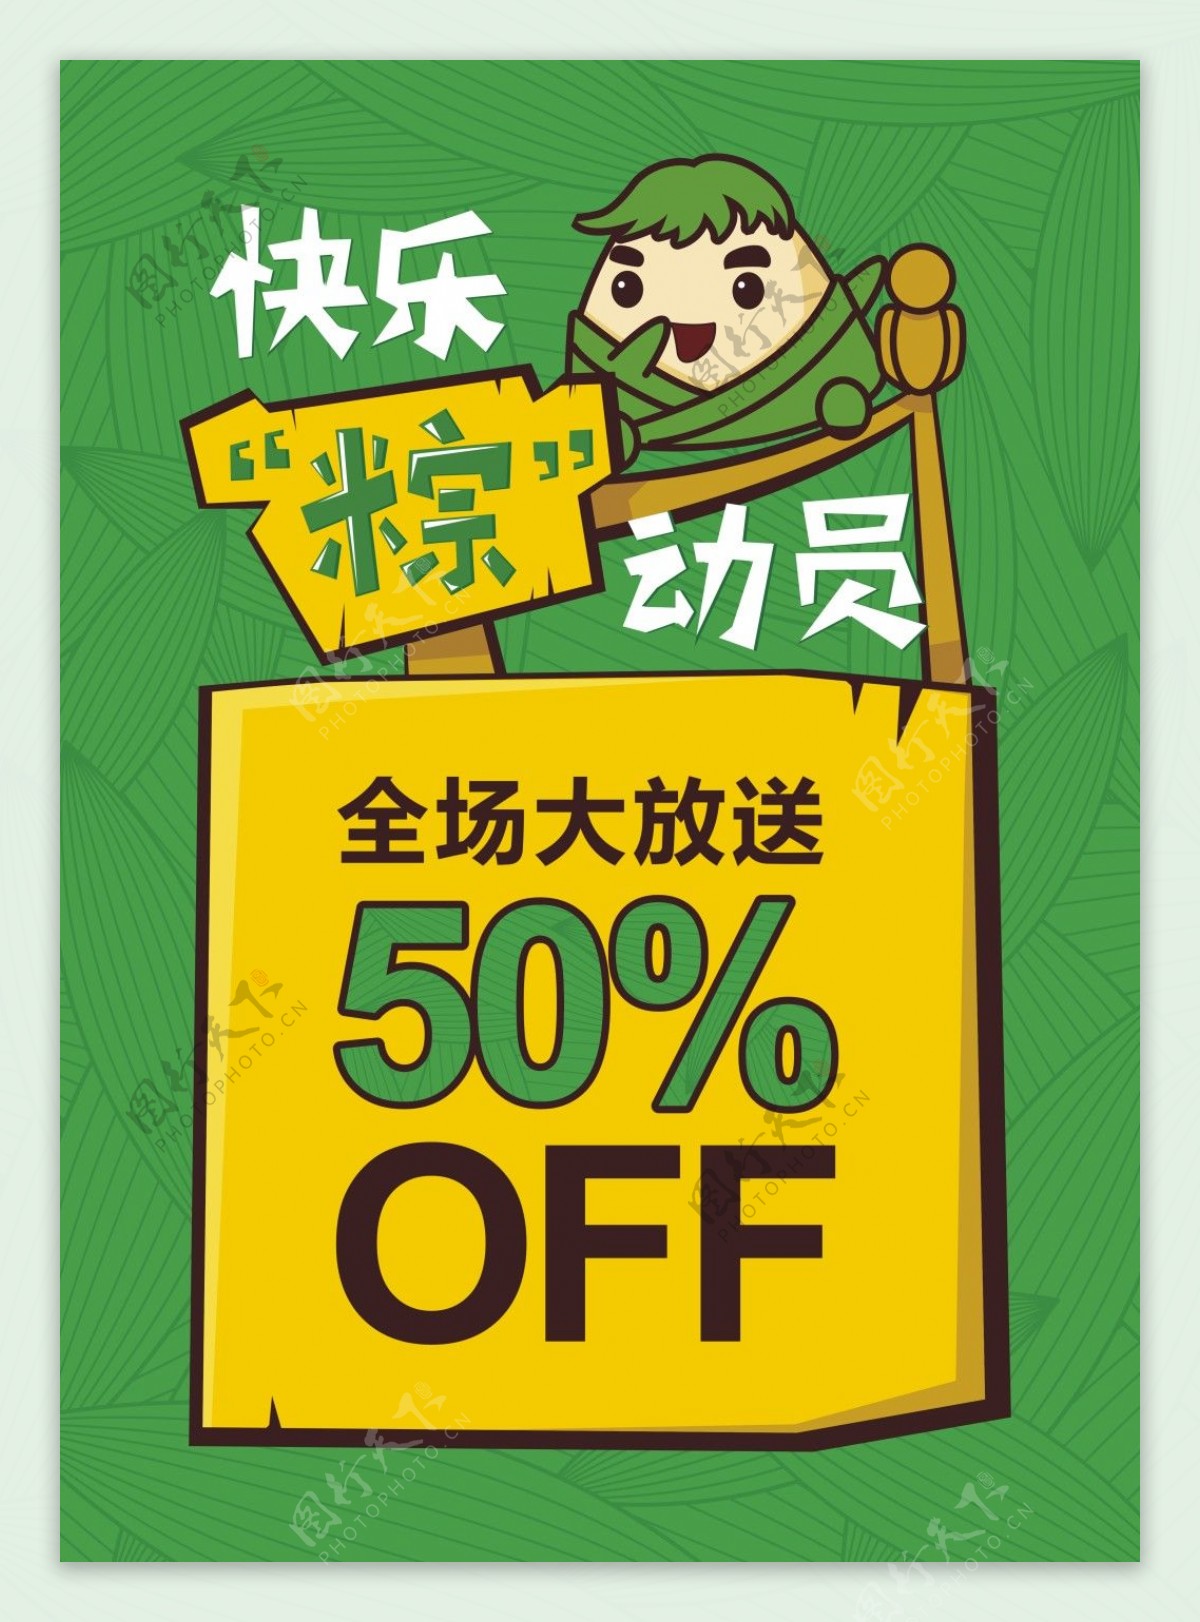 端午粽子节活动促销海报